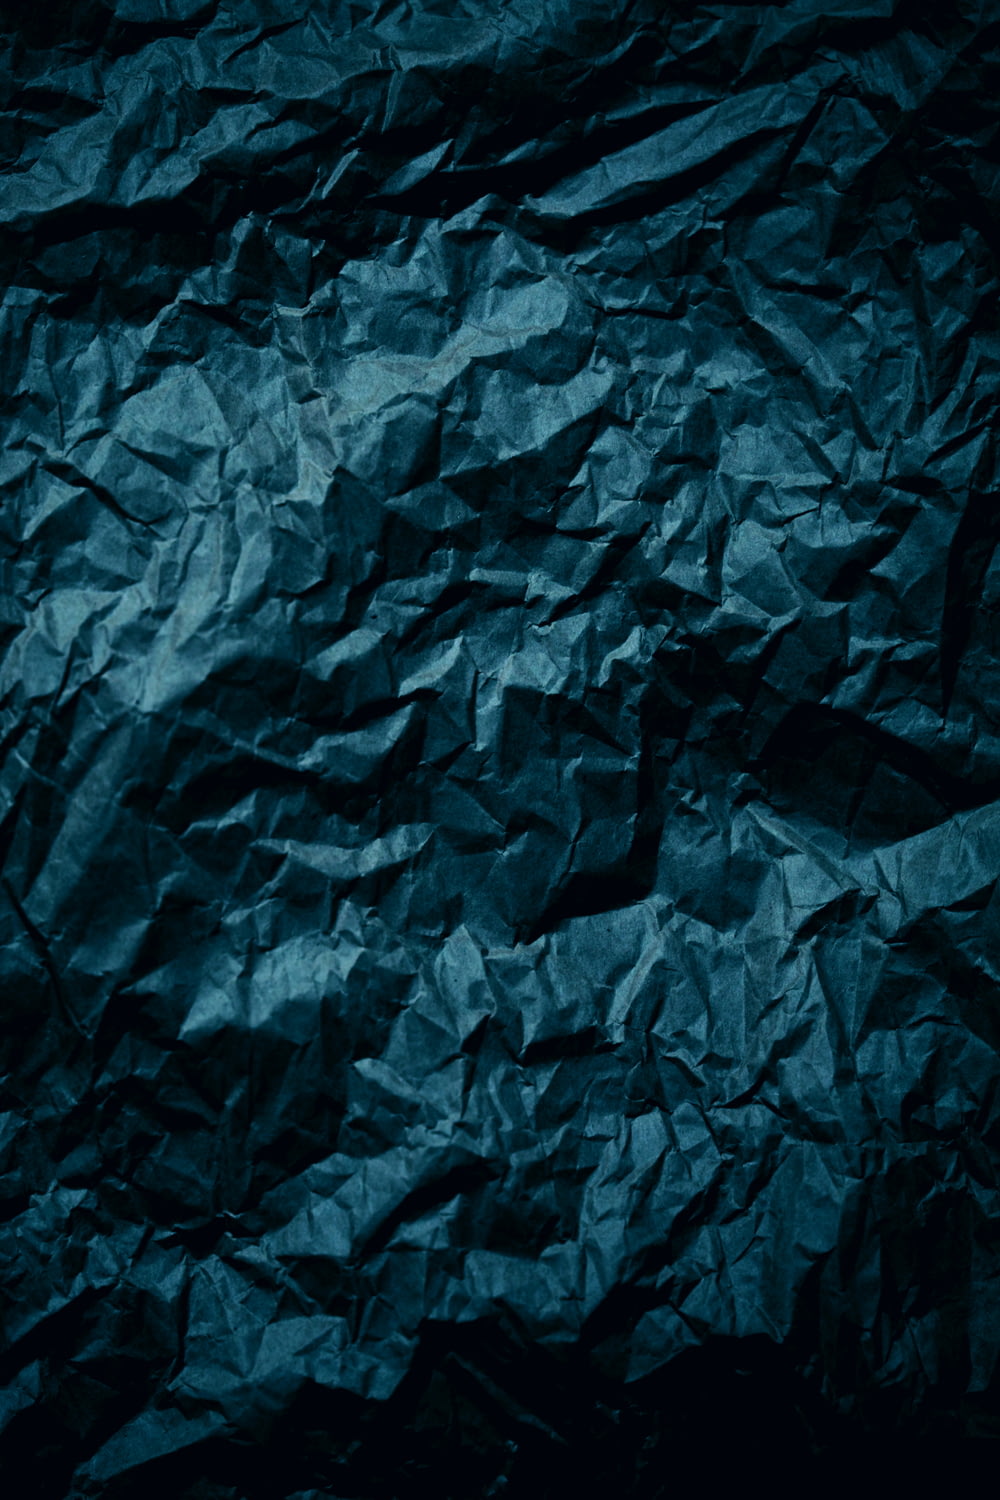 um fundo de papel amassado azul escuro